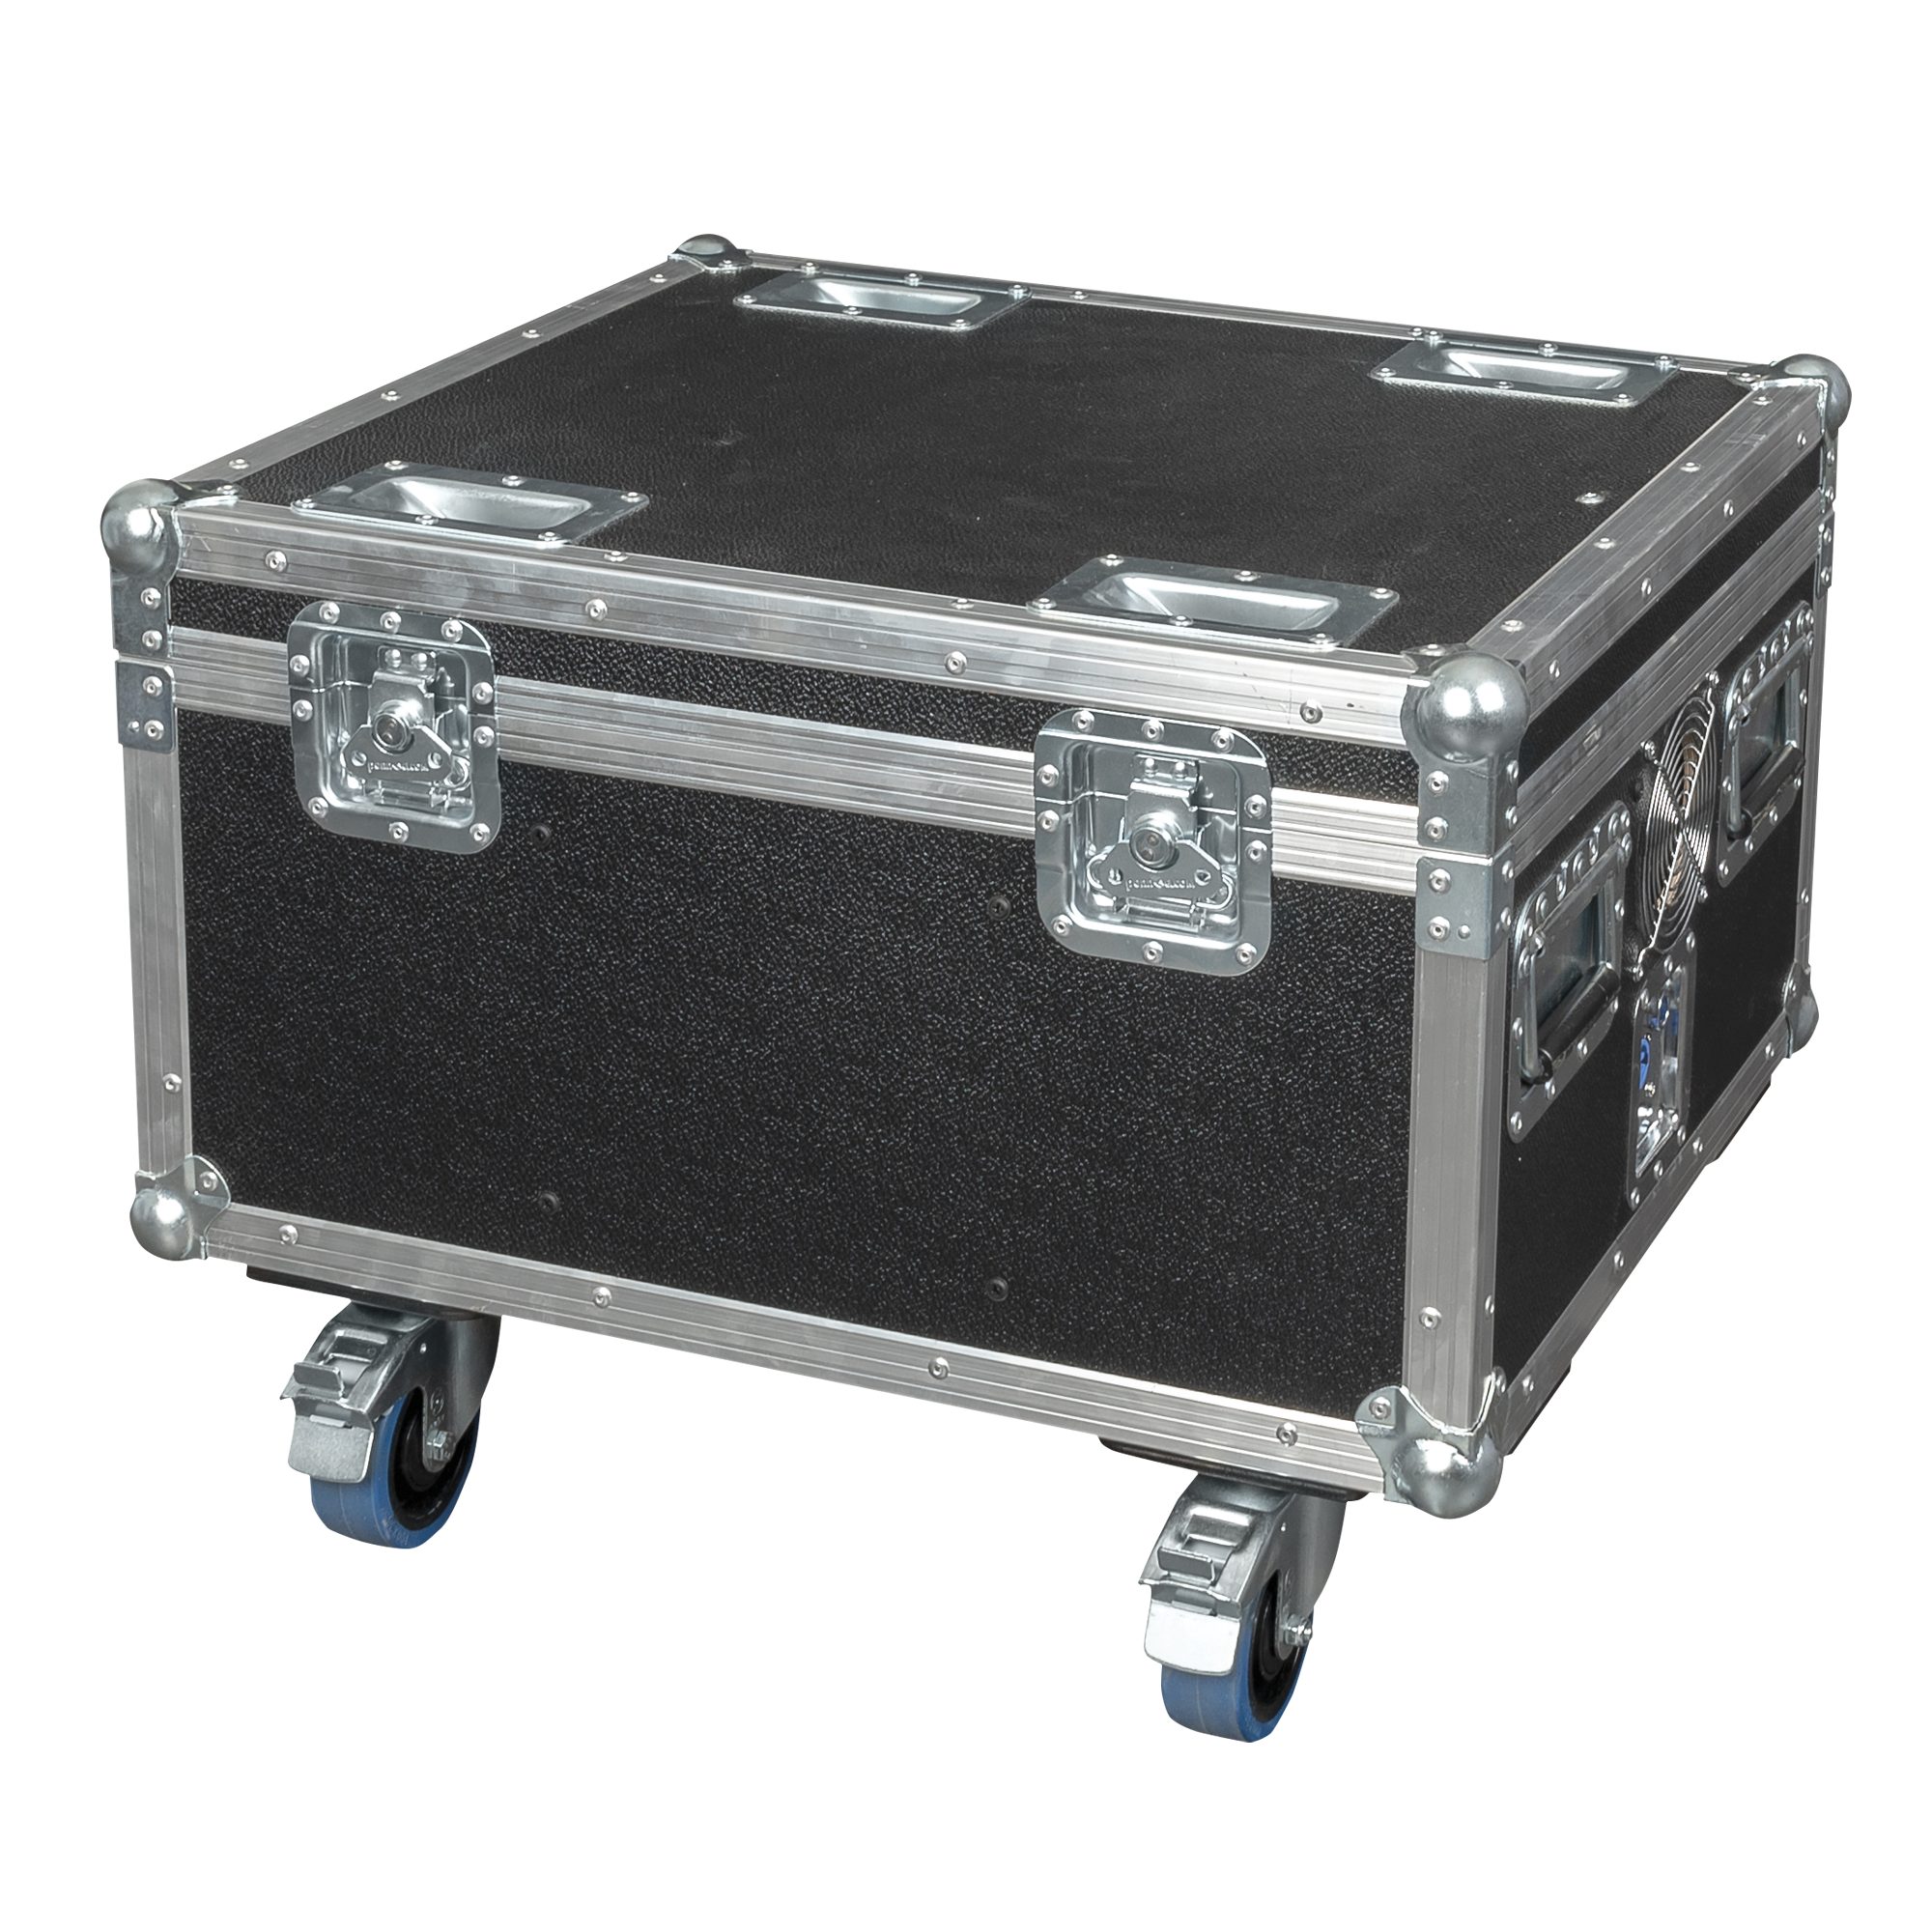 Show tec Transportbehälter Showtec Charger Case for 6x EventSpot 1600 Q4 Flightcase